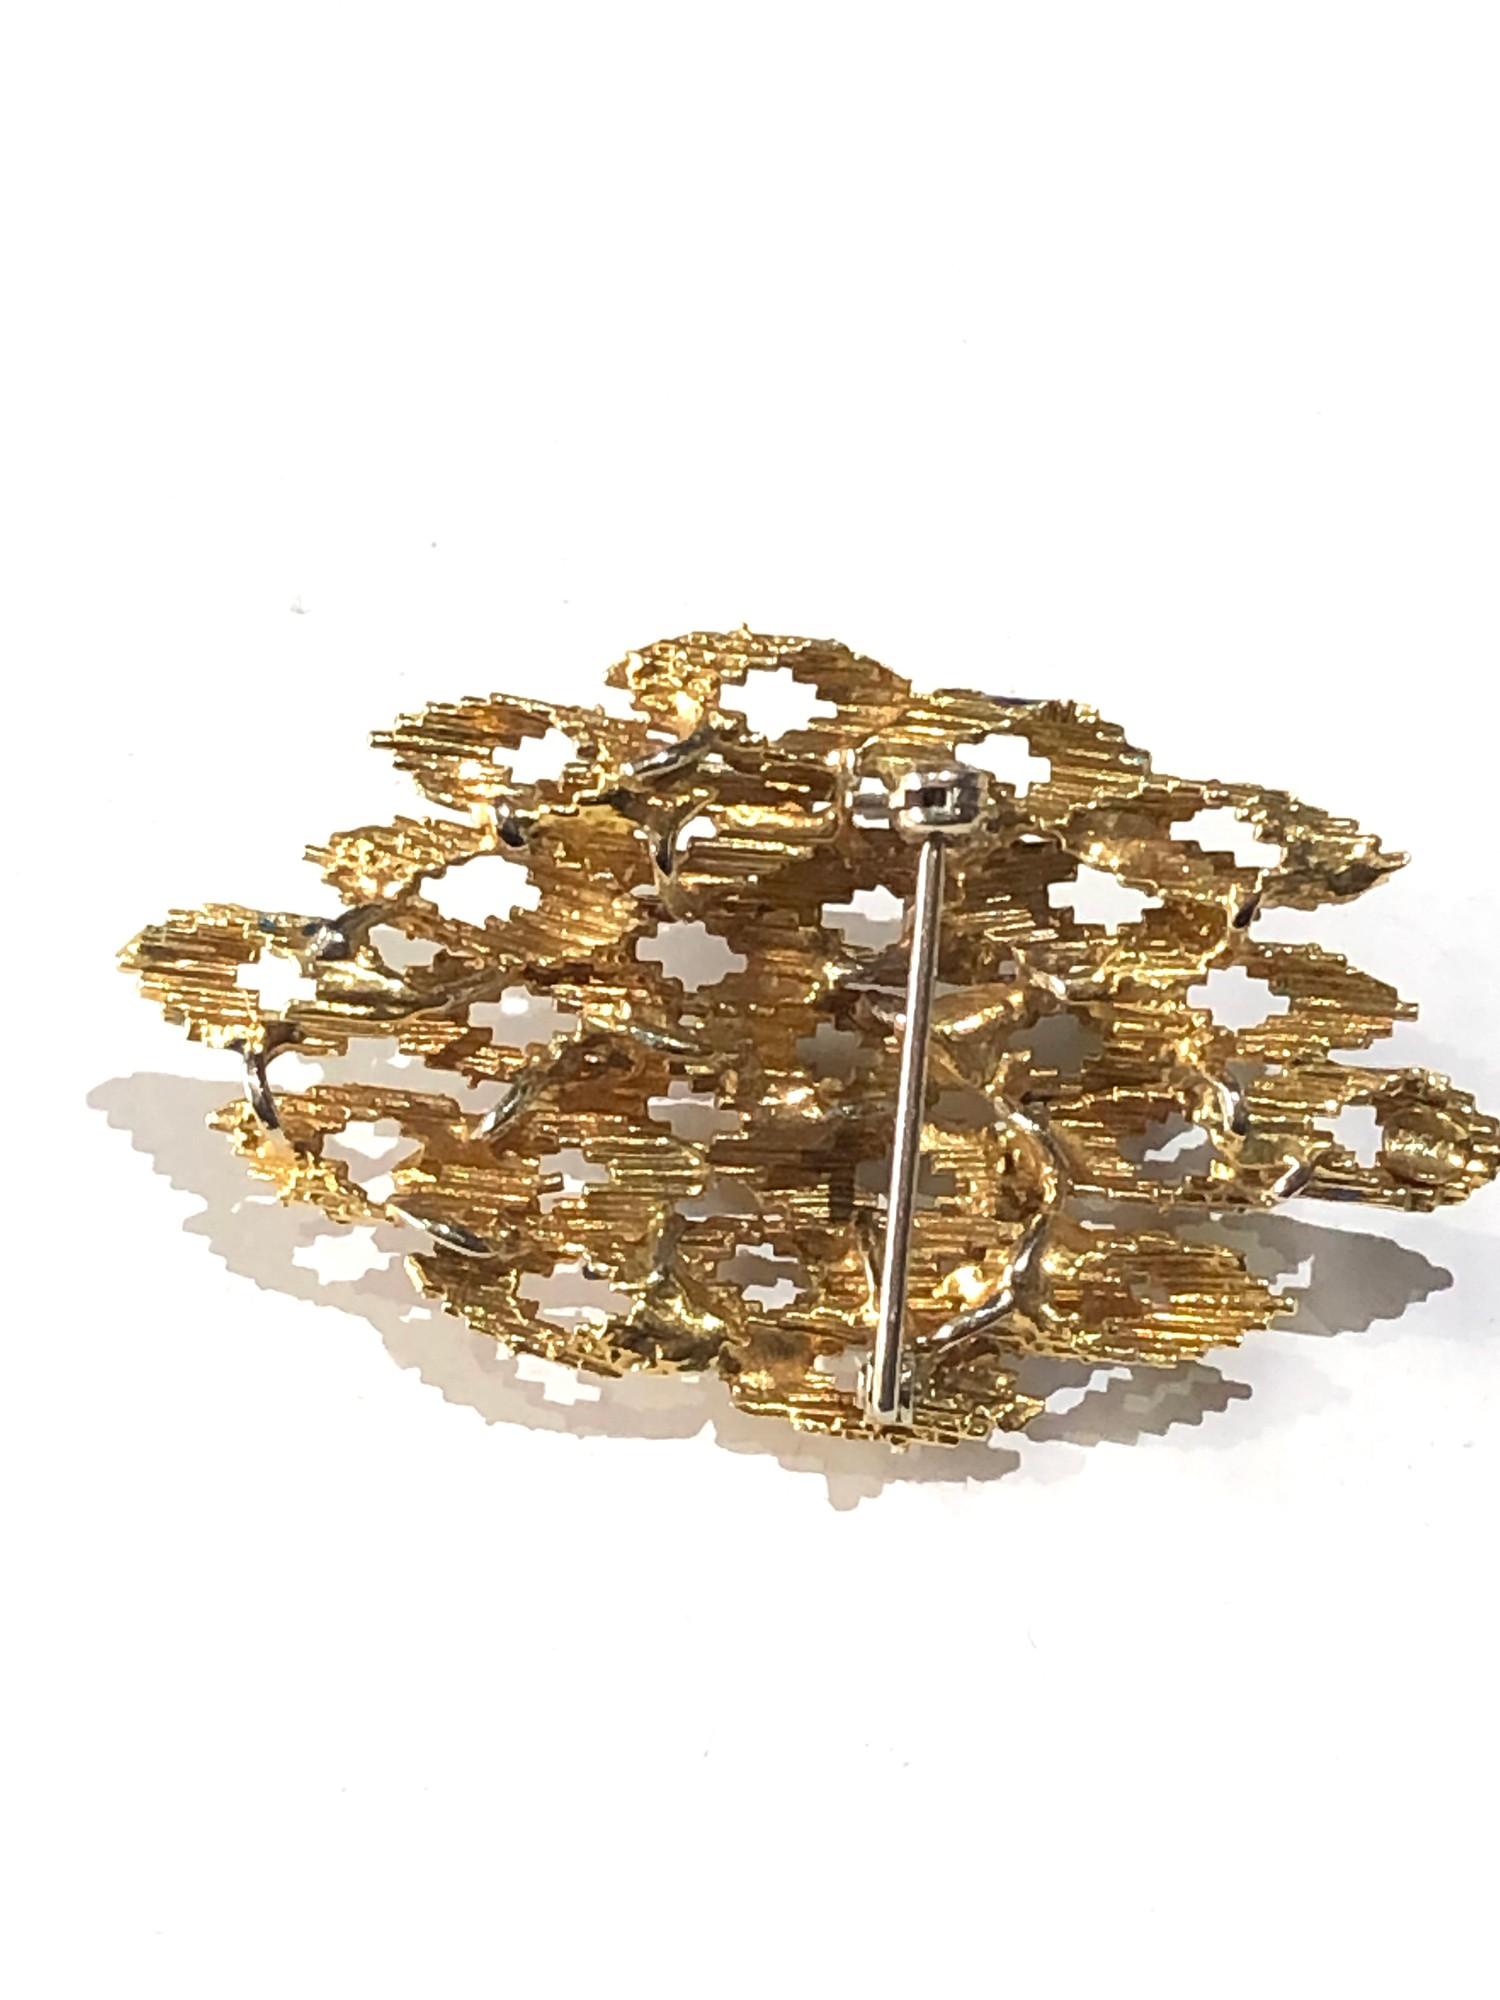 Fine 18ct gold & enamel modernist design brooch weight 13.2g - Image 3 of 3